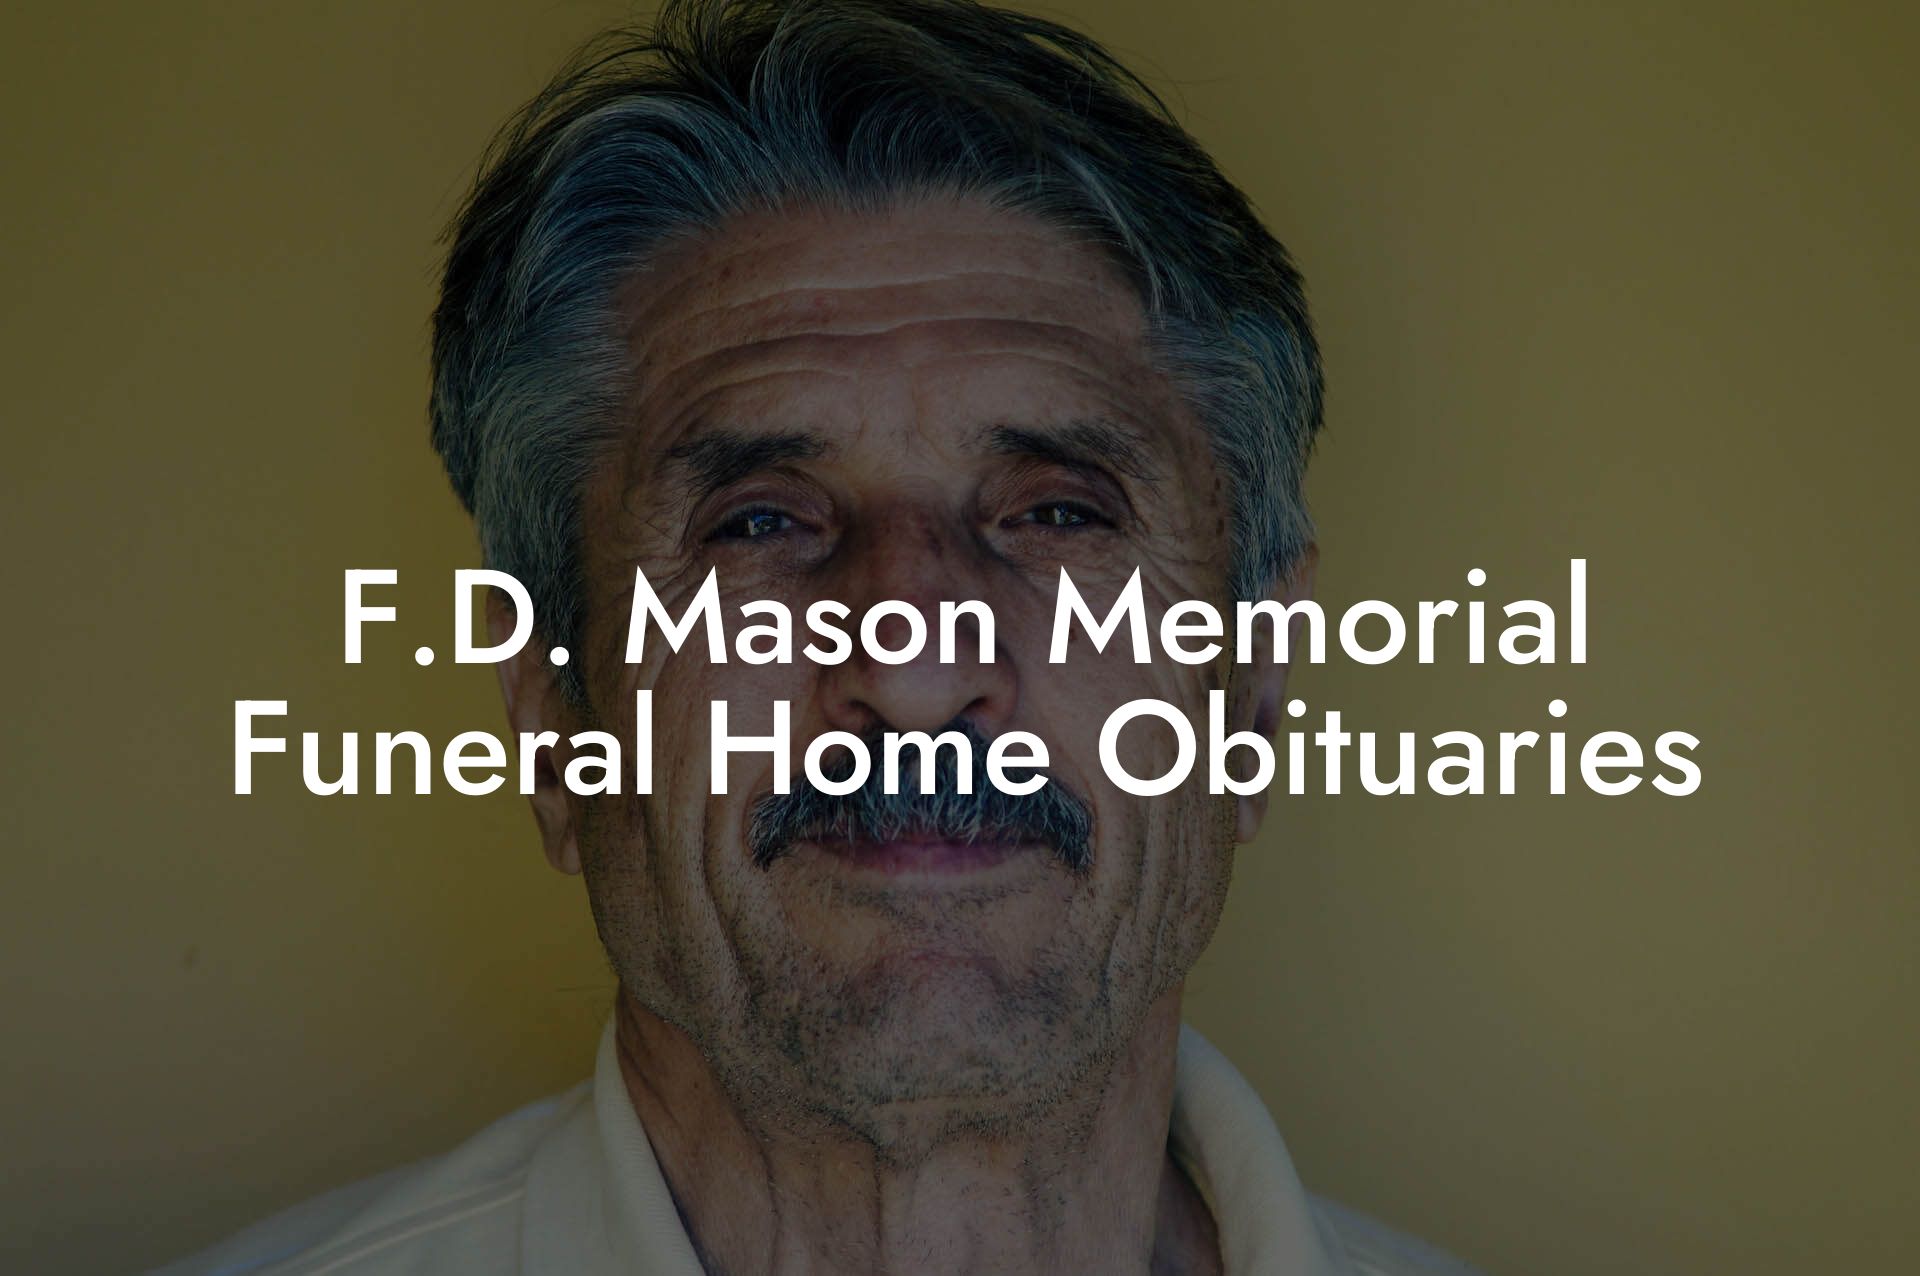 F.D. Mason Memorial Funeral Home Obituaries